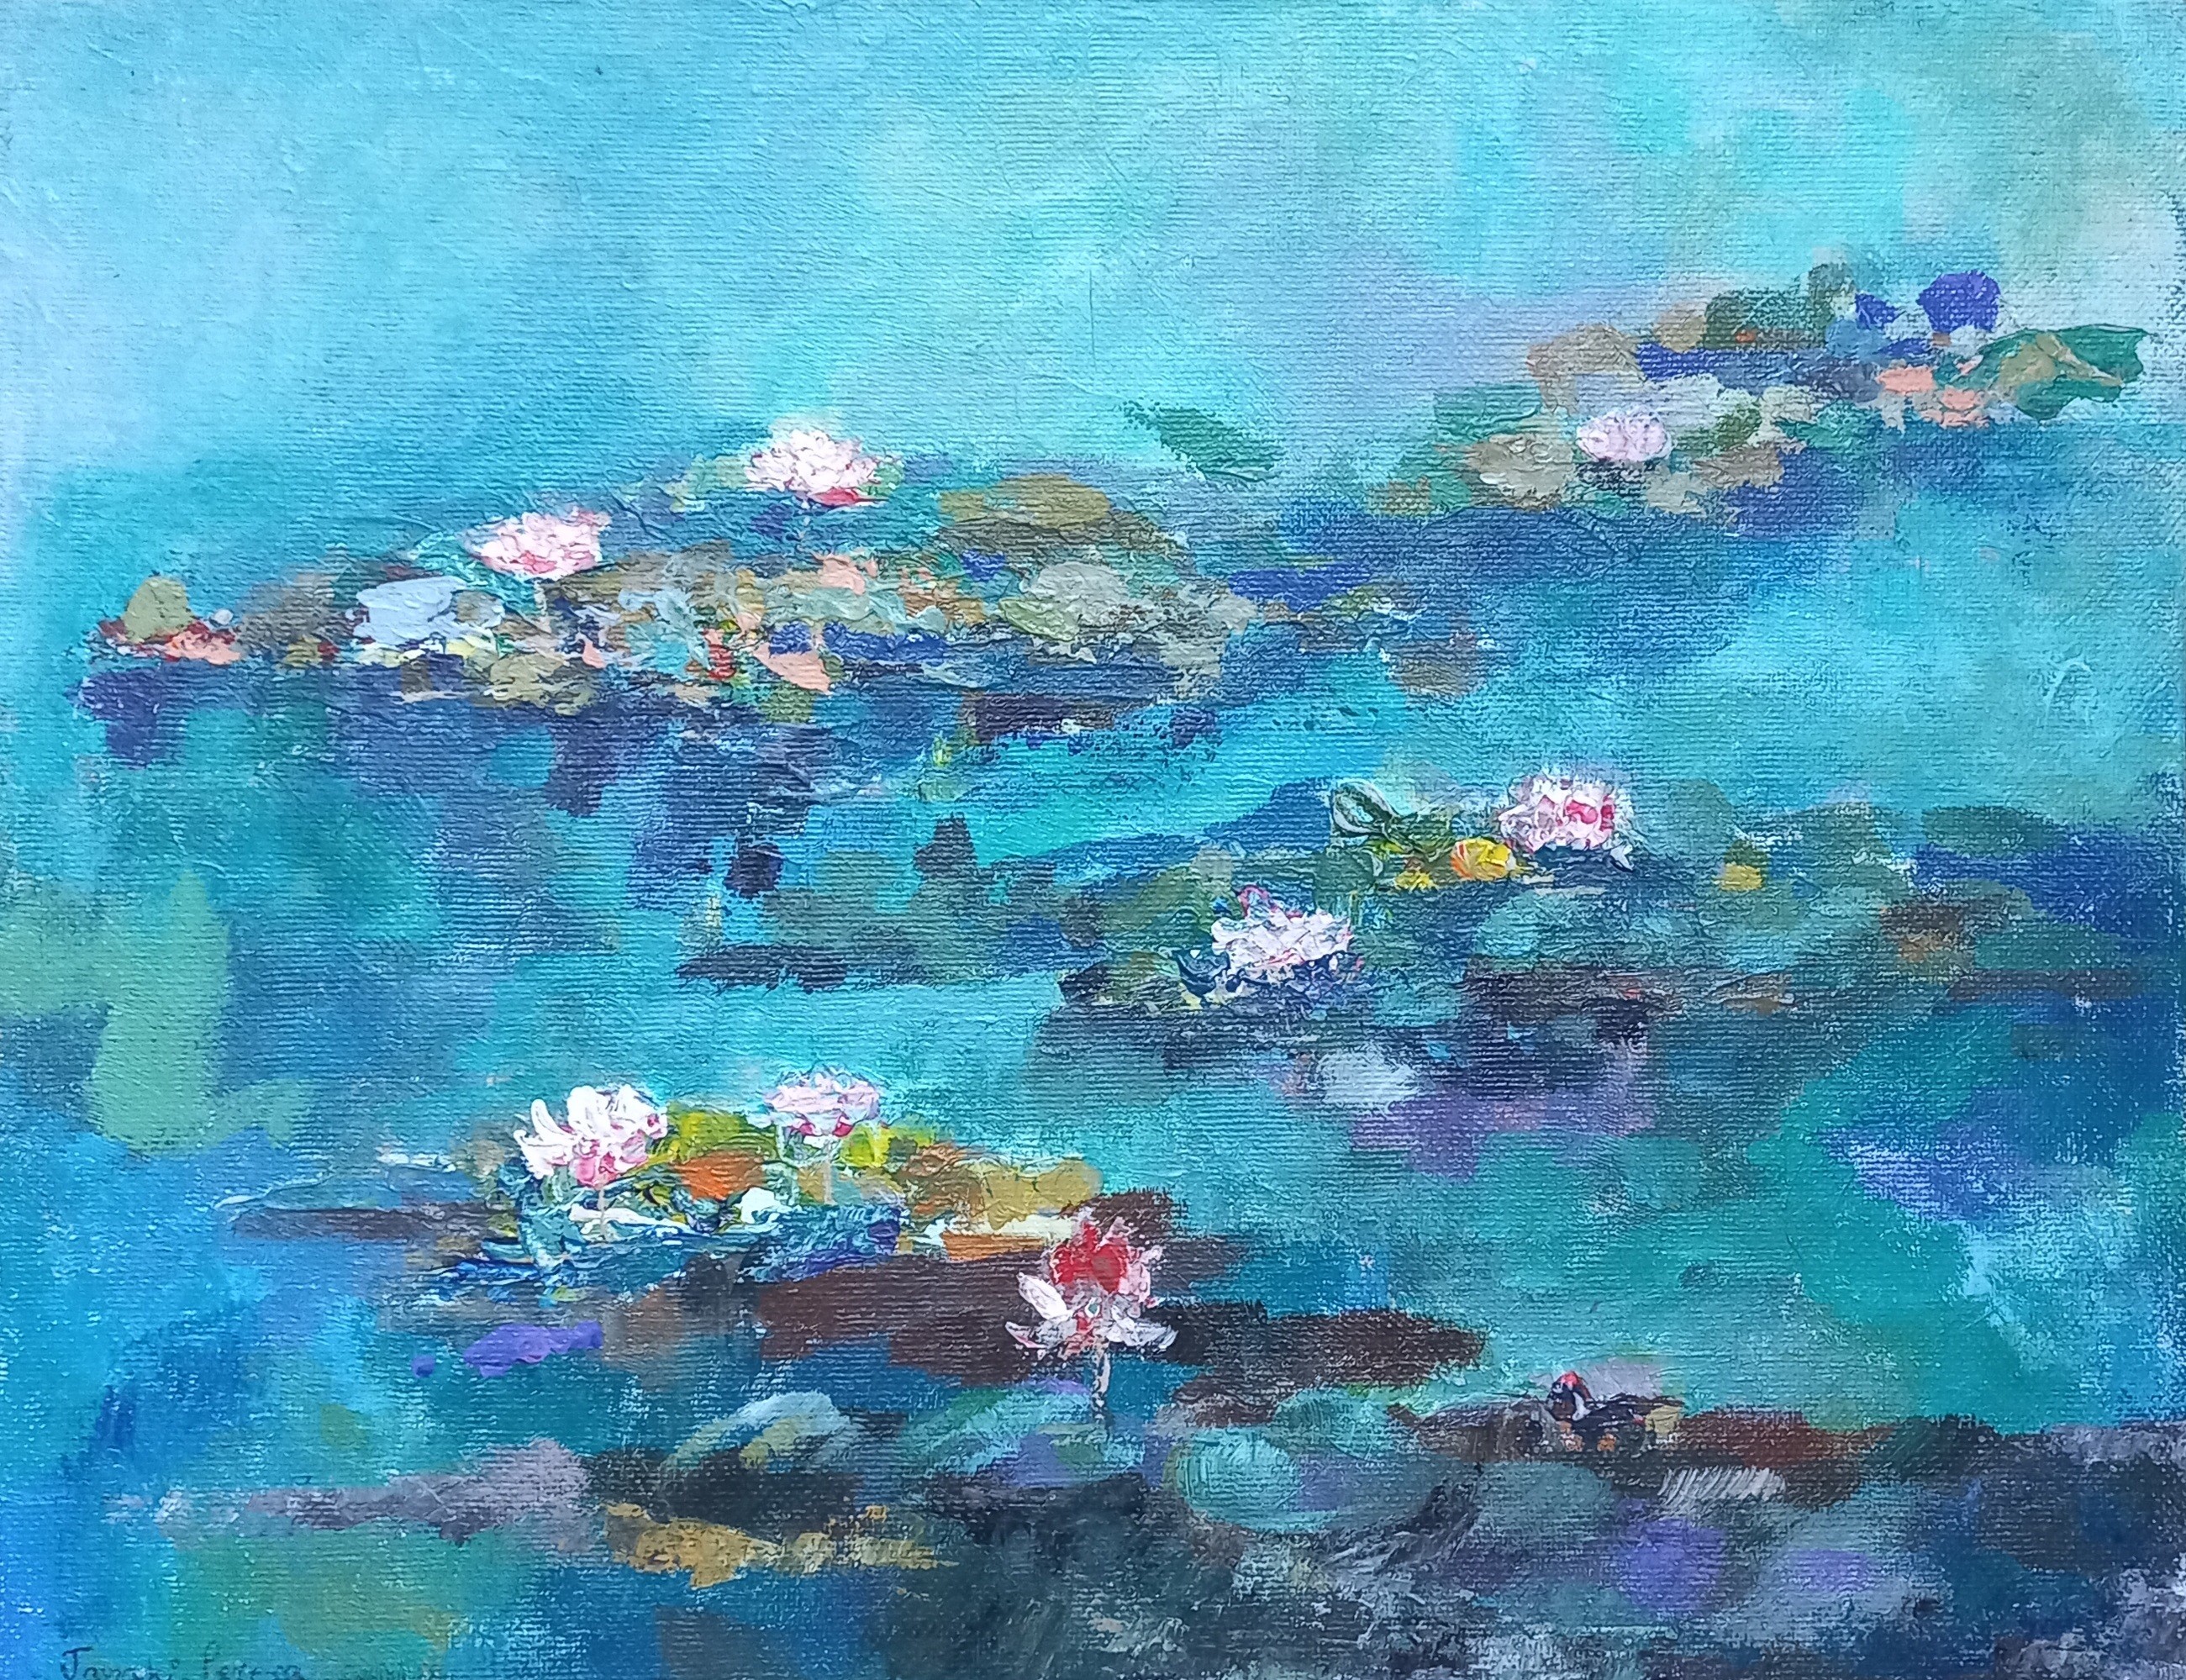 Lotus pond by Janaki Perera